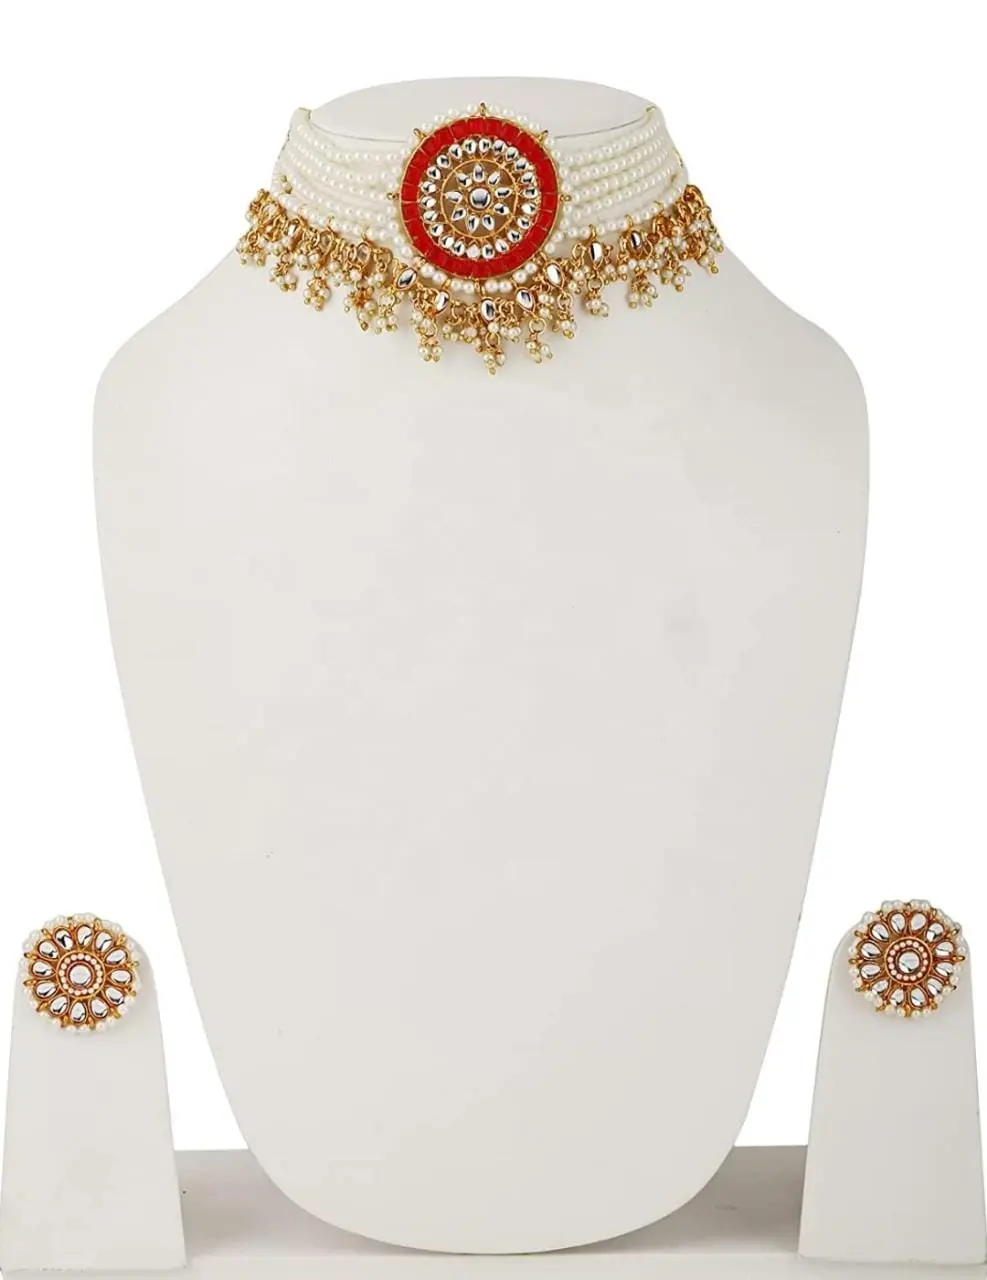 Ювелирные изделия JMC, увеличенное изображение, добавить для сравнения, оптом, kundan polki, антикварные индийские свадебные украшения, тяжелые позолоченные